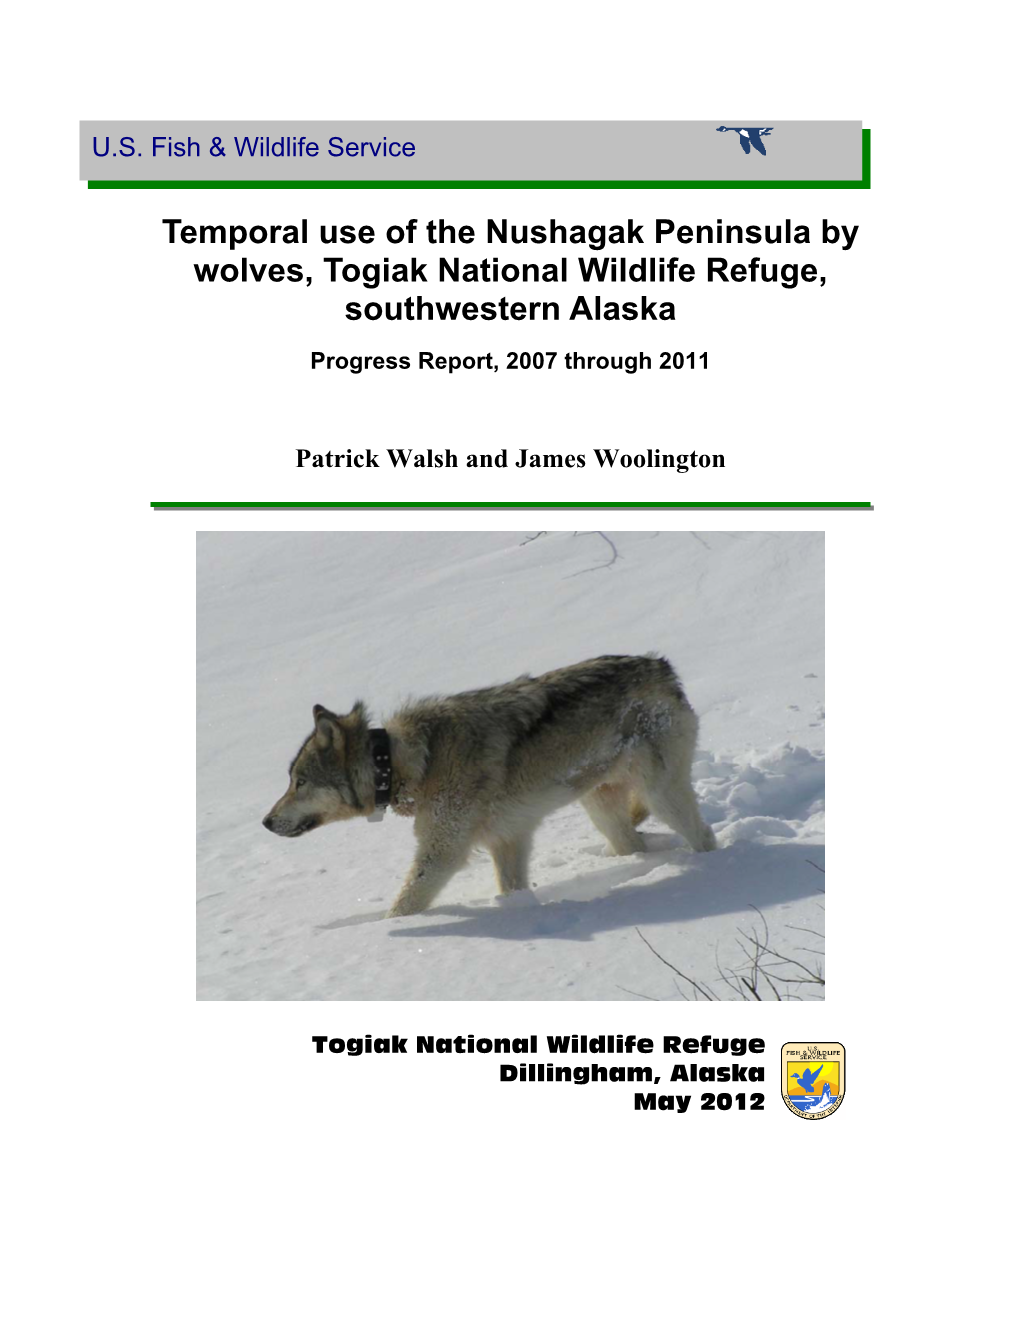 Temporal Use of the Nushagak Peninsula by Wolves, Togiak National Wildlife Refuge, Southwestern Alaska. Progress Report, 2007 Through 2011